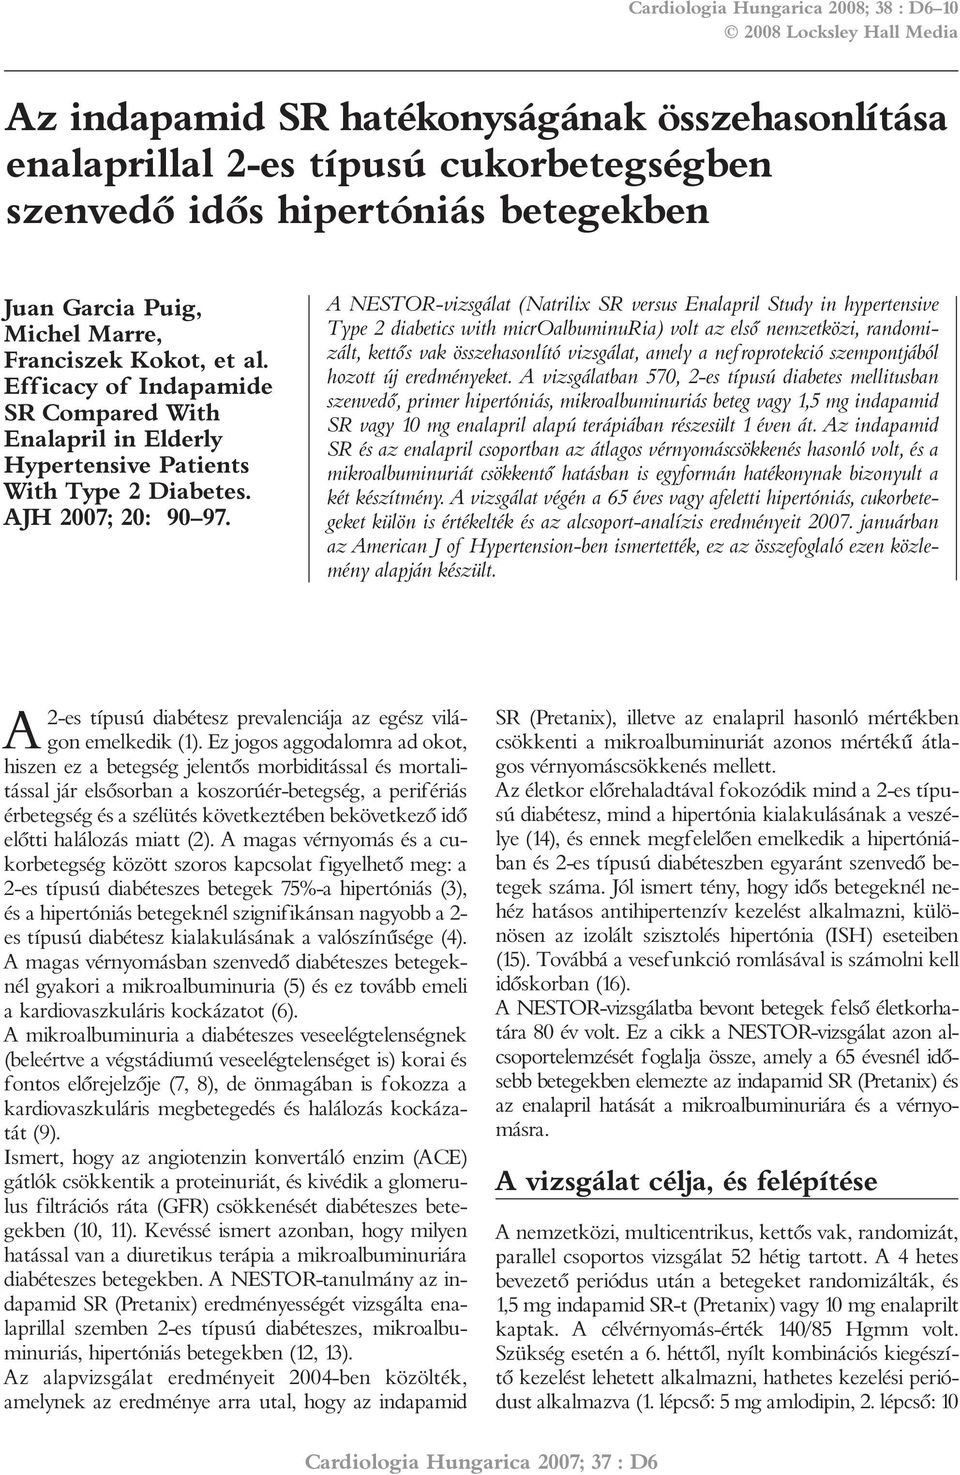 A NESTOR-vizsgálat (Natrilix SR versus Enalapril Study in hypertensive Type 2 diabetics with microalbuminuria) volt az elsõ nemzetközi, randomizált, kettõs vak összehasonlító vizsgálat, amely a